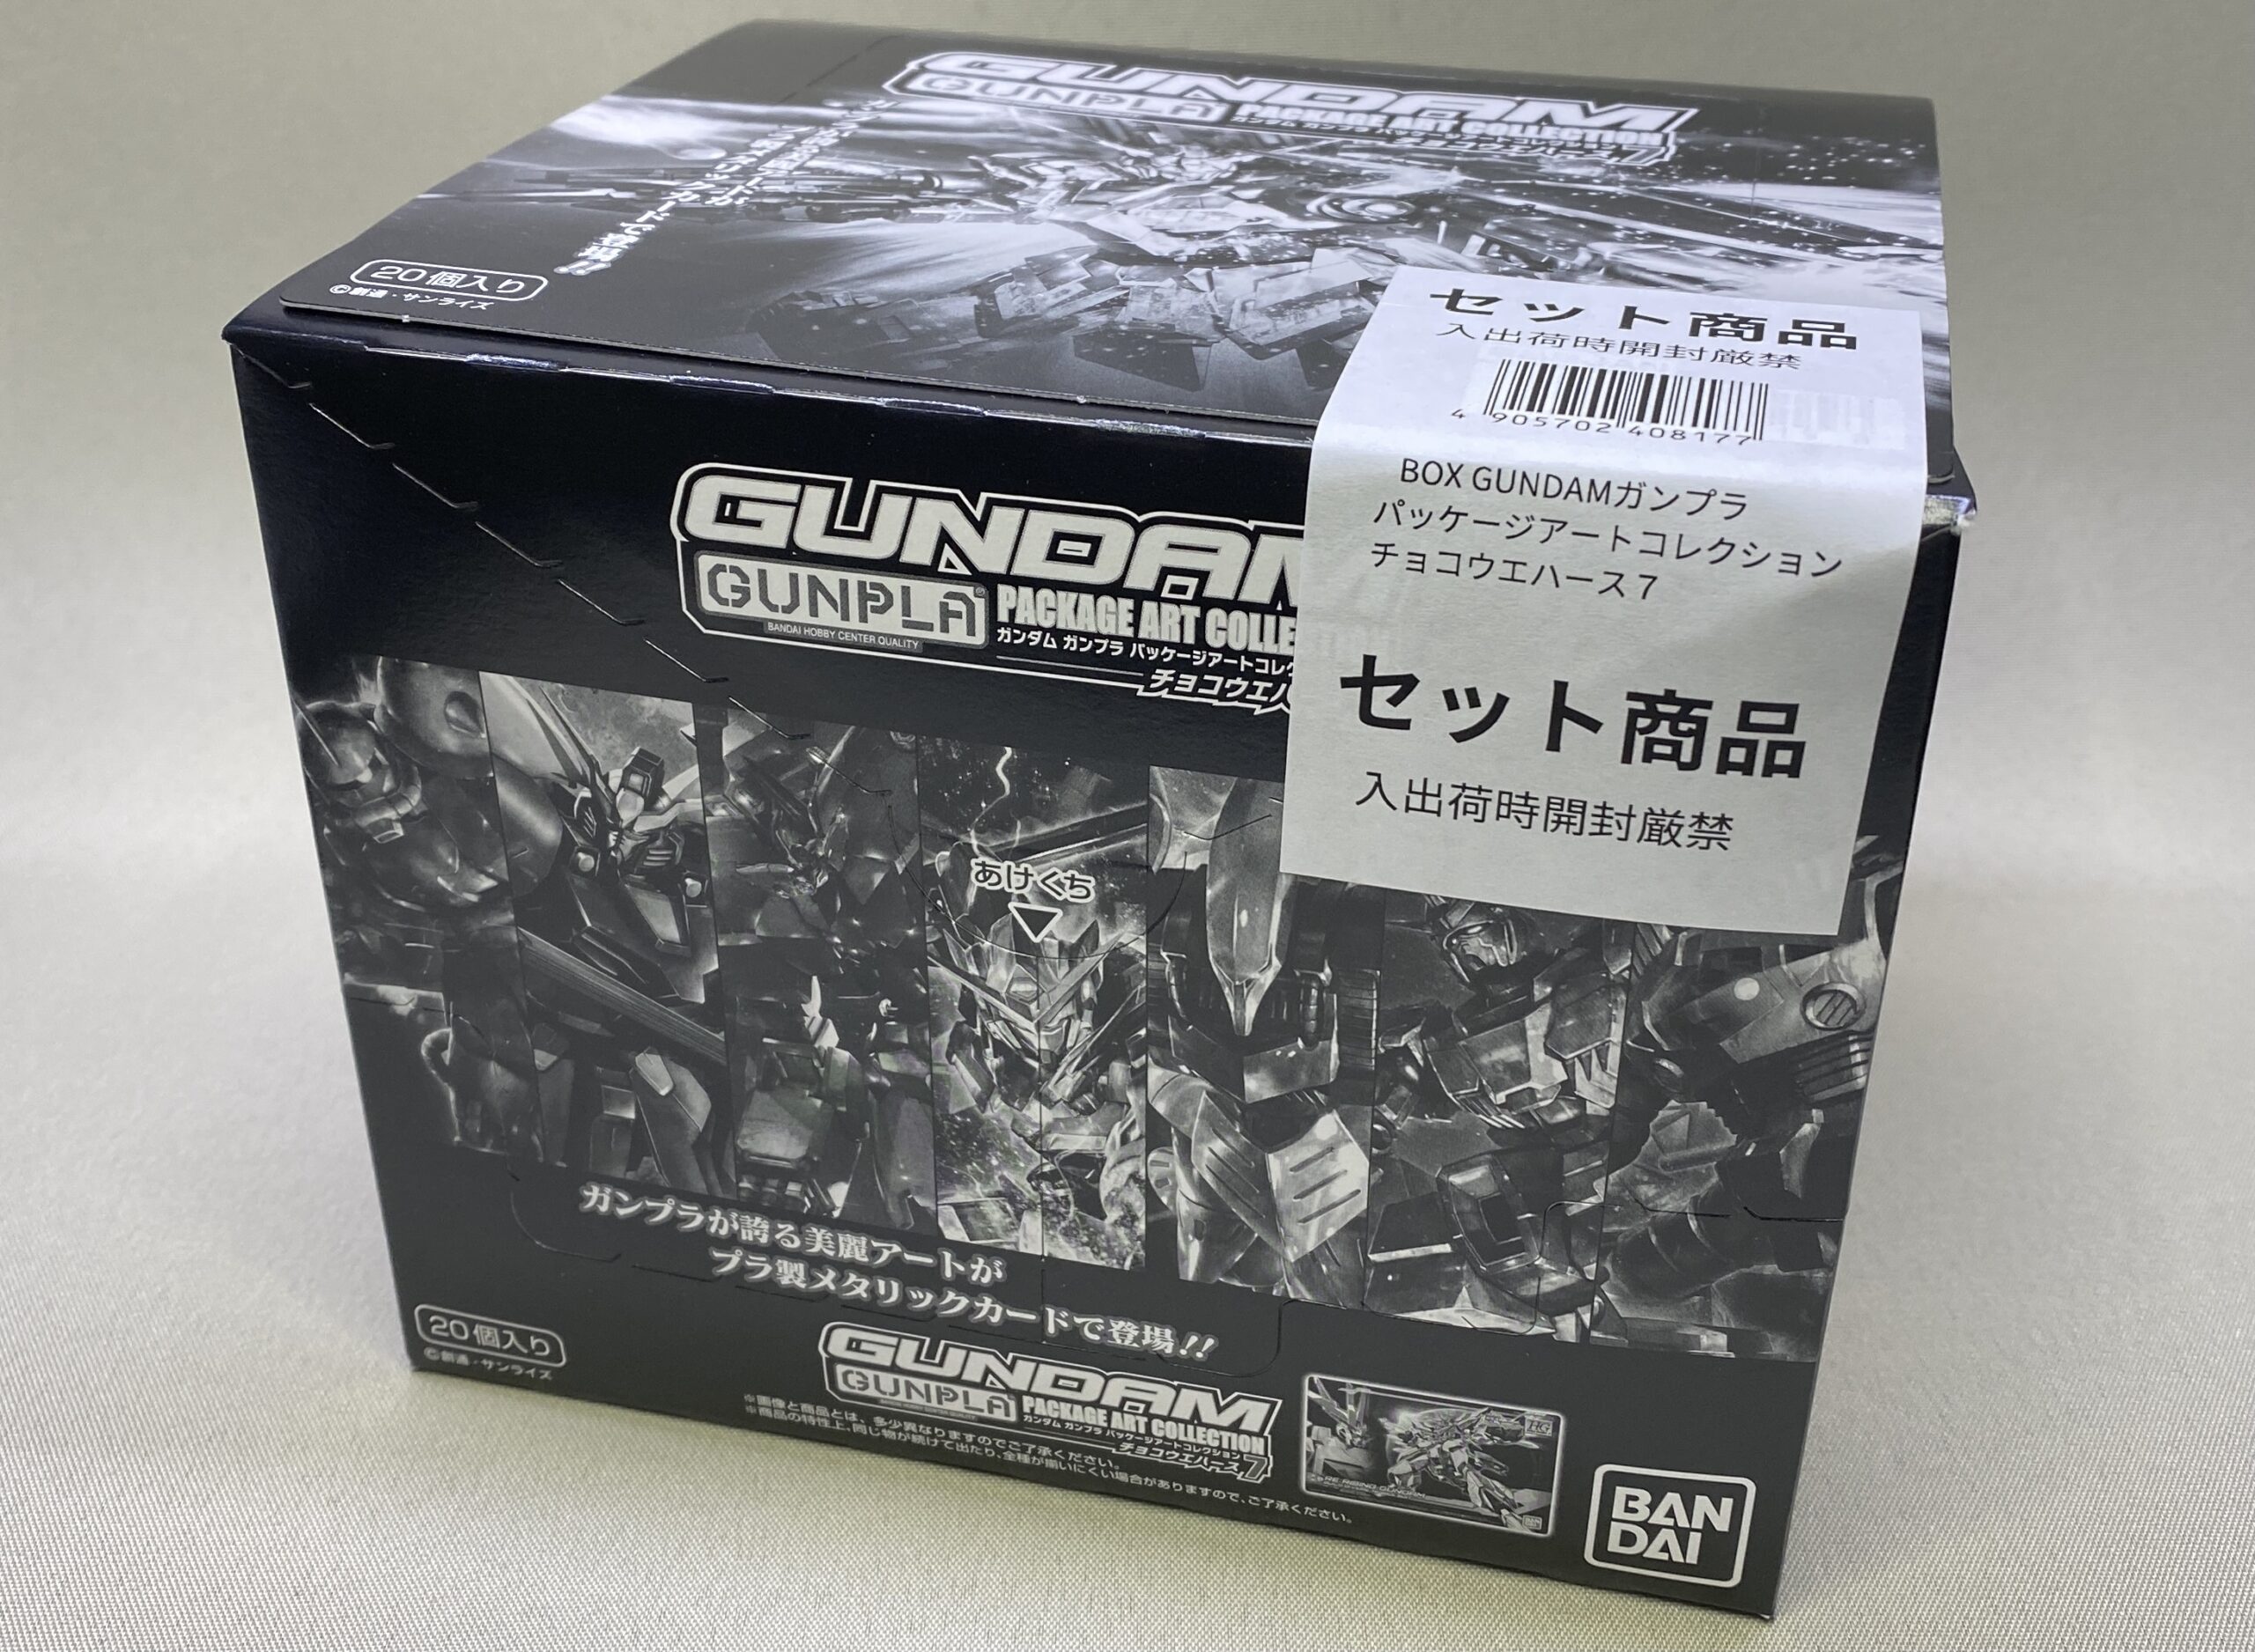 一箱開封 Gundamガンプラパッケージアートコレクション チョコウエハース7 みたたみ製作部屋